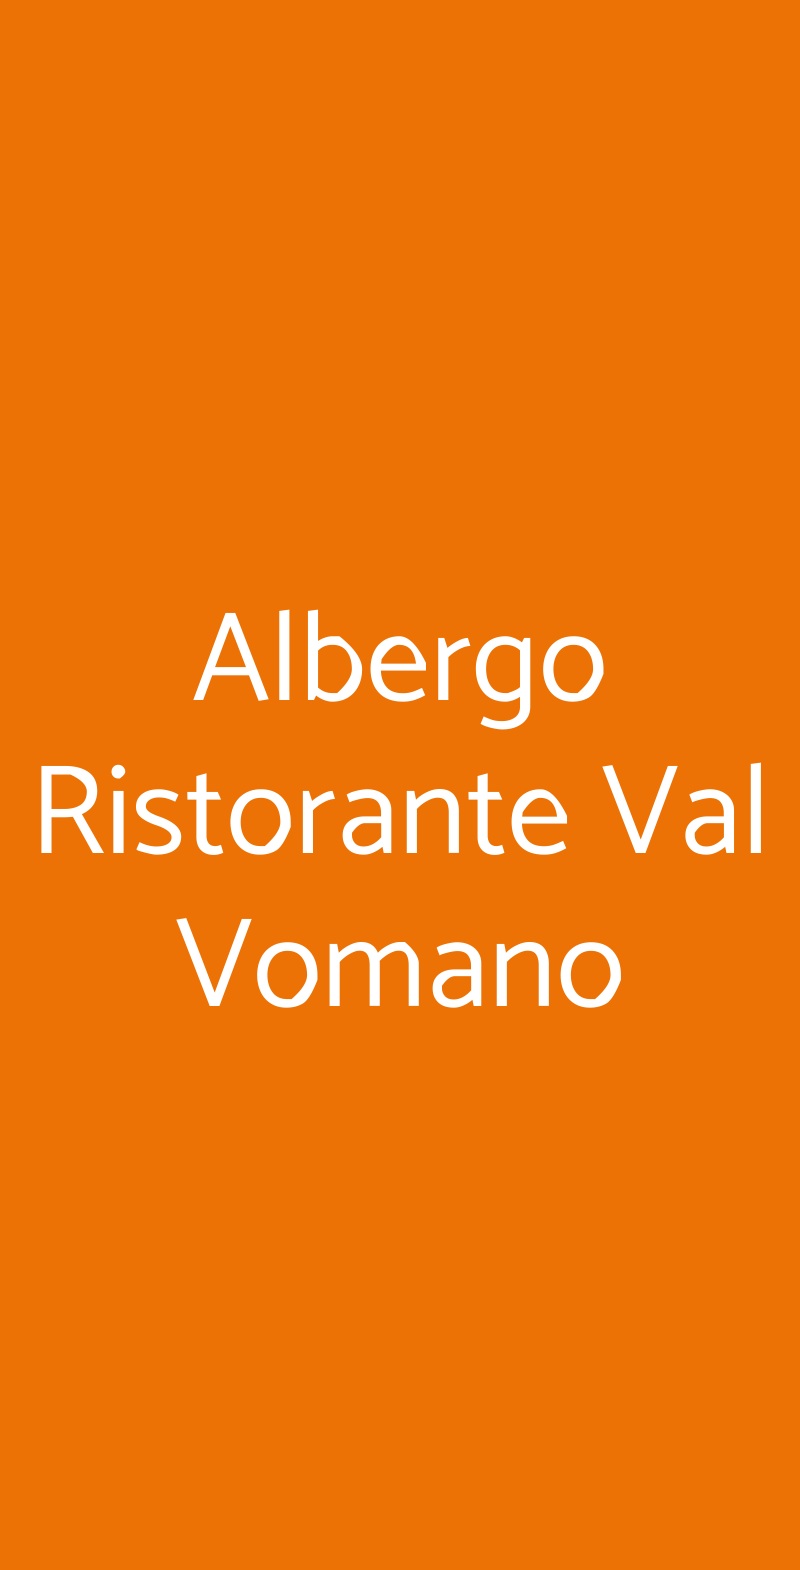 Albergo Ristorante Val Vomano Penna Sant'Andrea menù 1 pagina